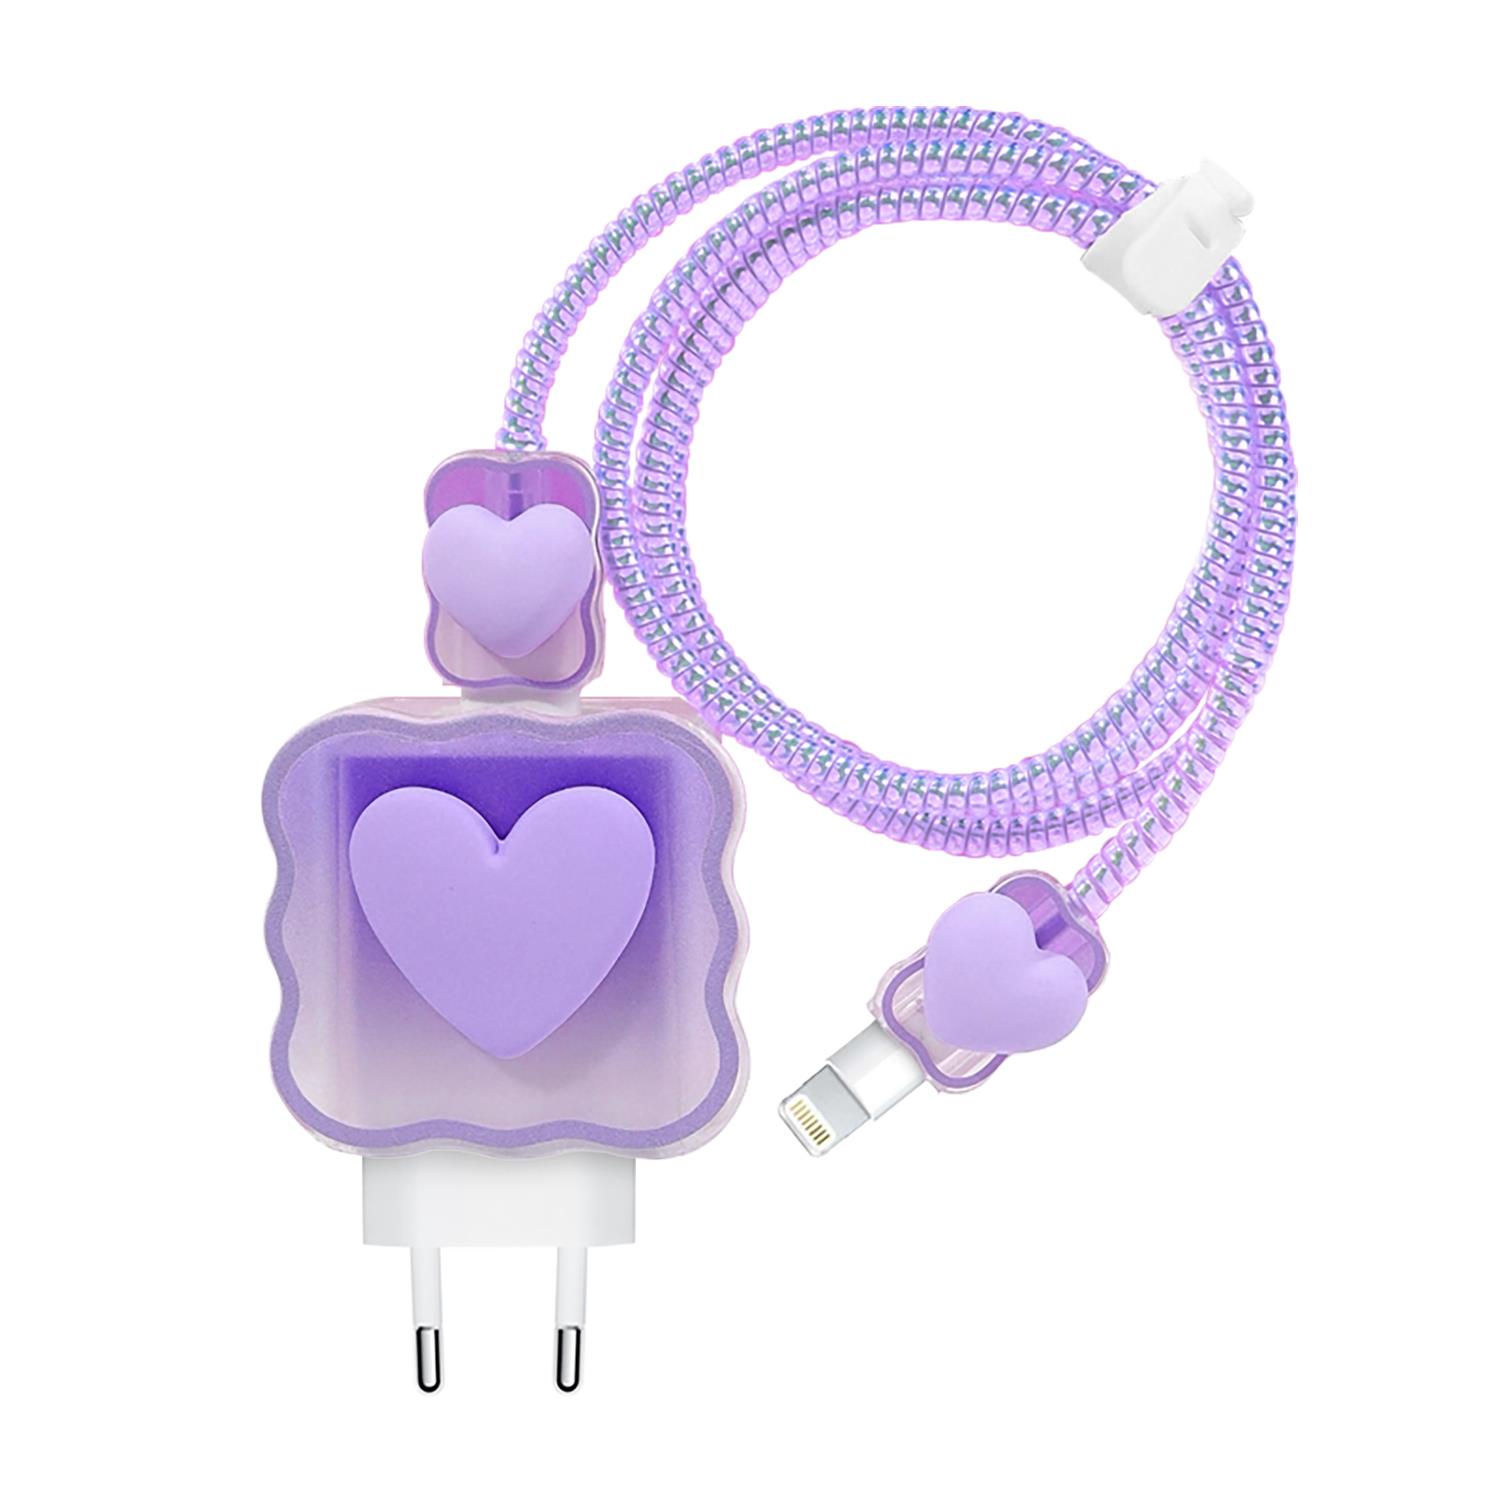 Microsonic Apple iPhone Kablo Koruyucu ve Şarj Adaptör Kılıf Süslü Kalp Desenli Lila